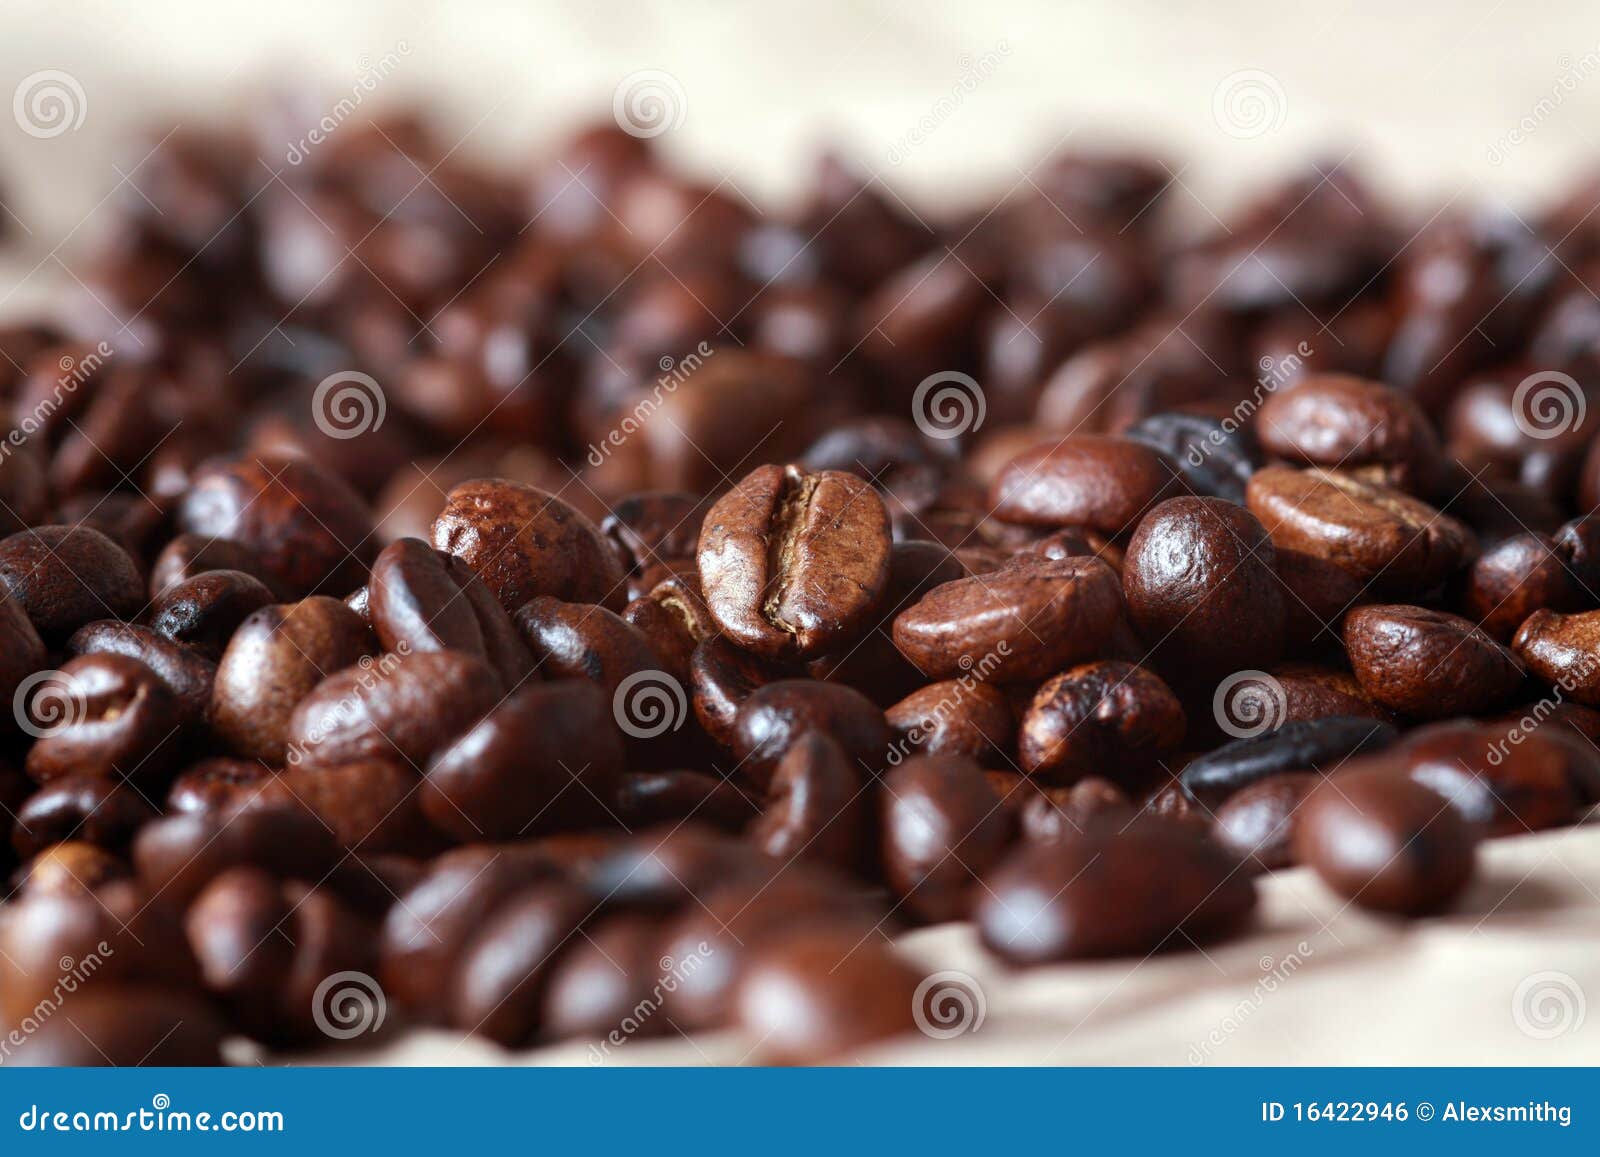 fresh coffee 咖啡豆 - 花魁咖啡豆